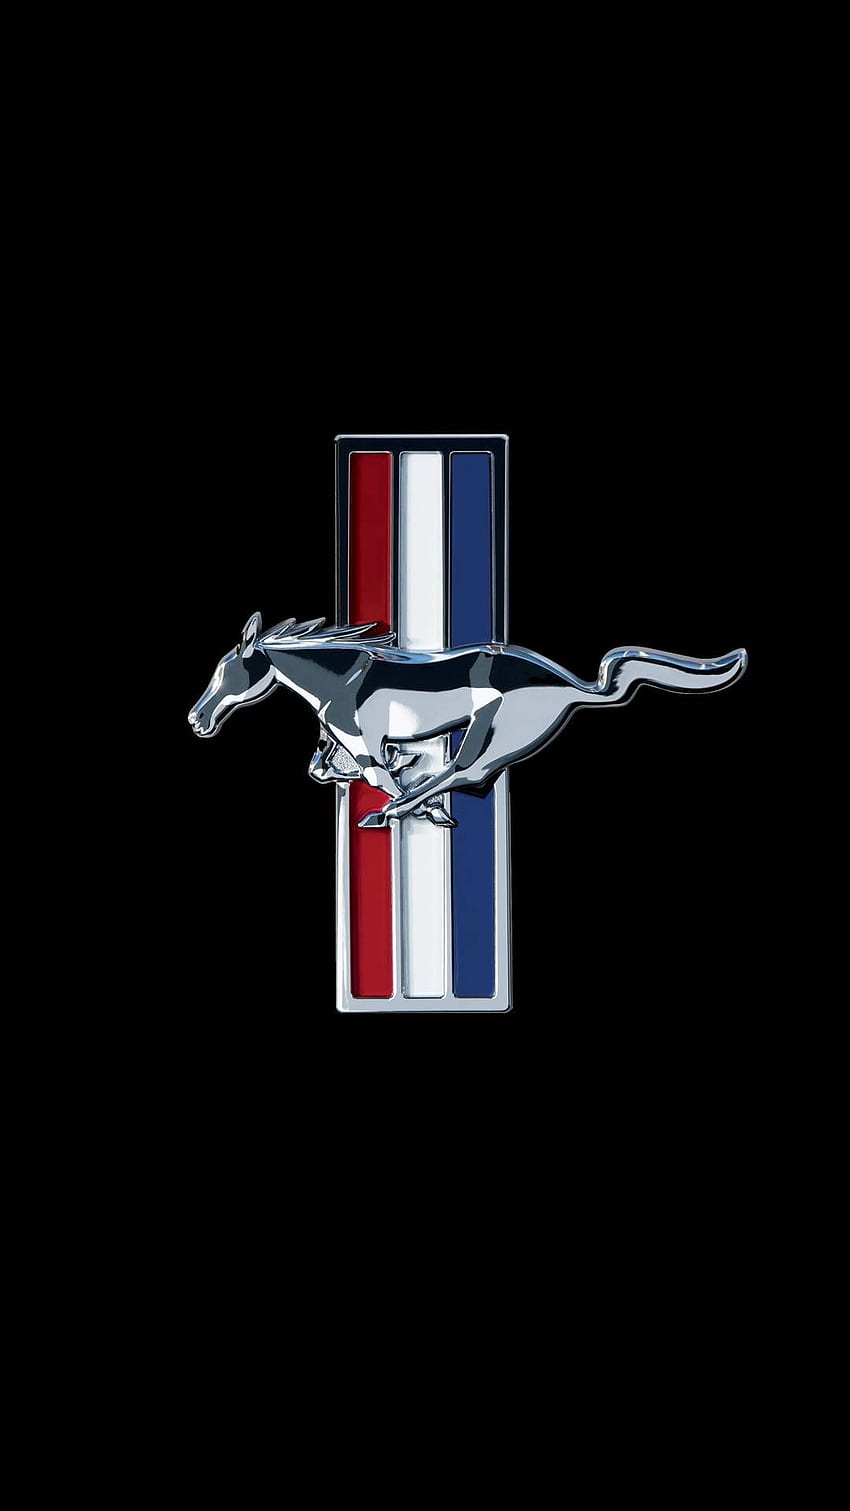 Mustang logo アイデア in 2021. mustang logo, mustang, mustang cars, Mustang Logo Phone HD電話の壁紙